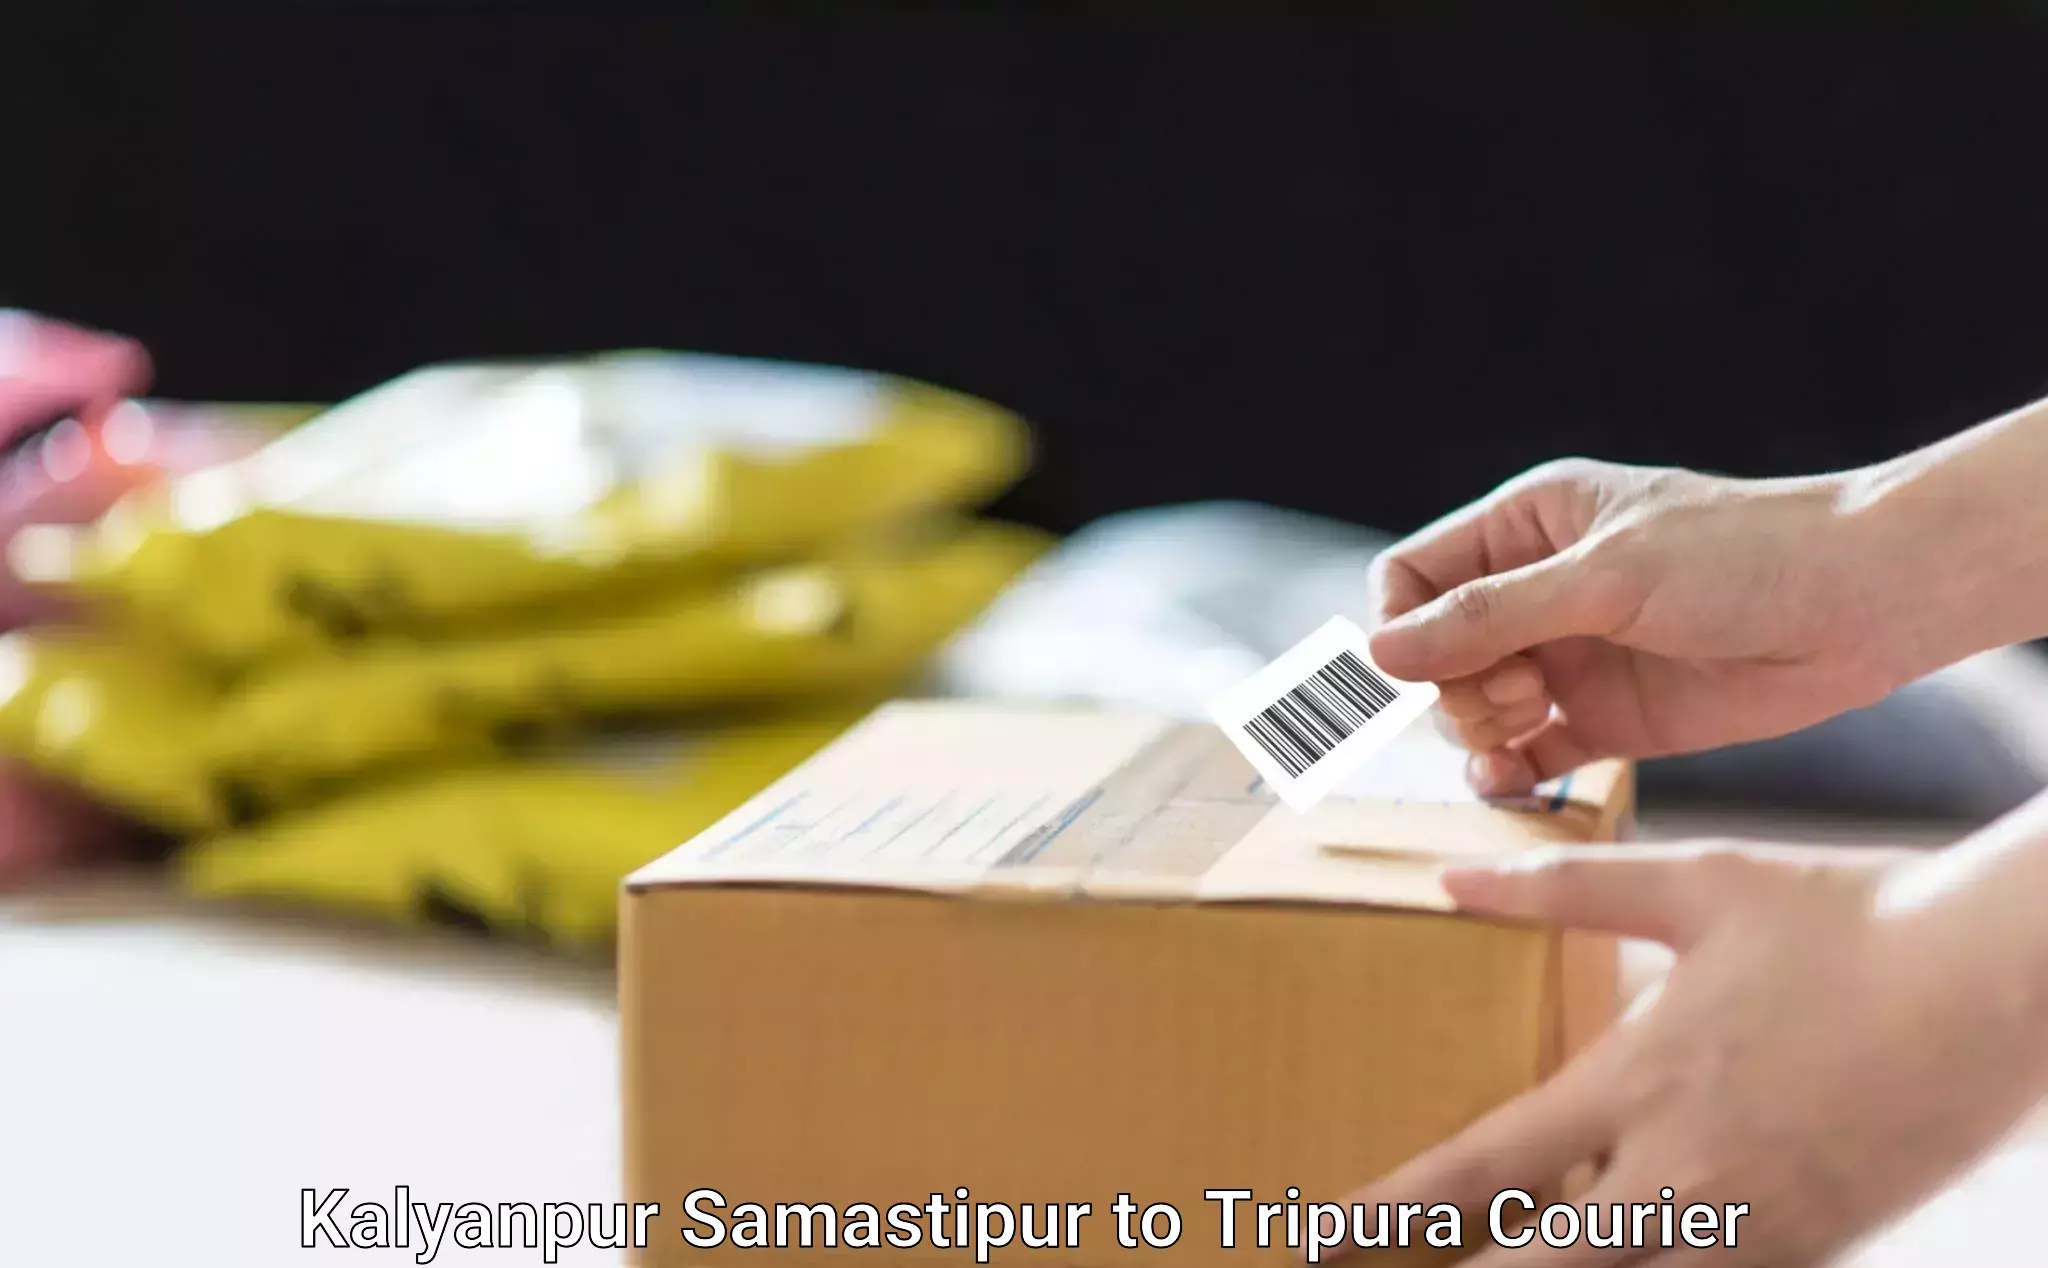 Furniture moving experts Kalyanpur Samastipur to Agartala